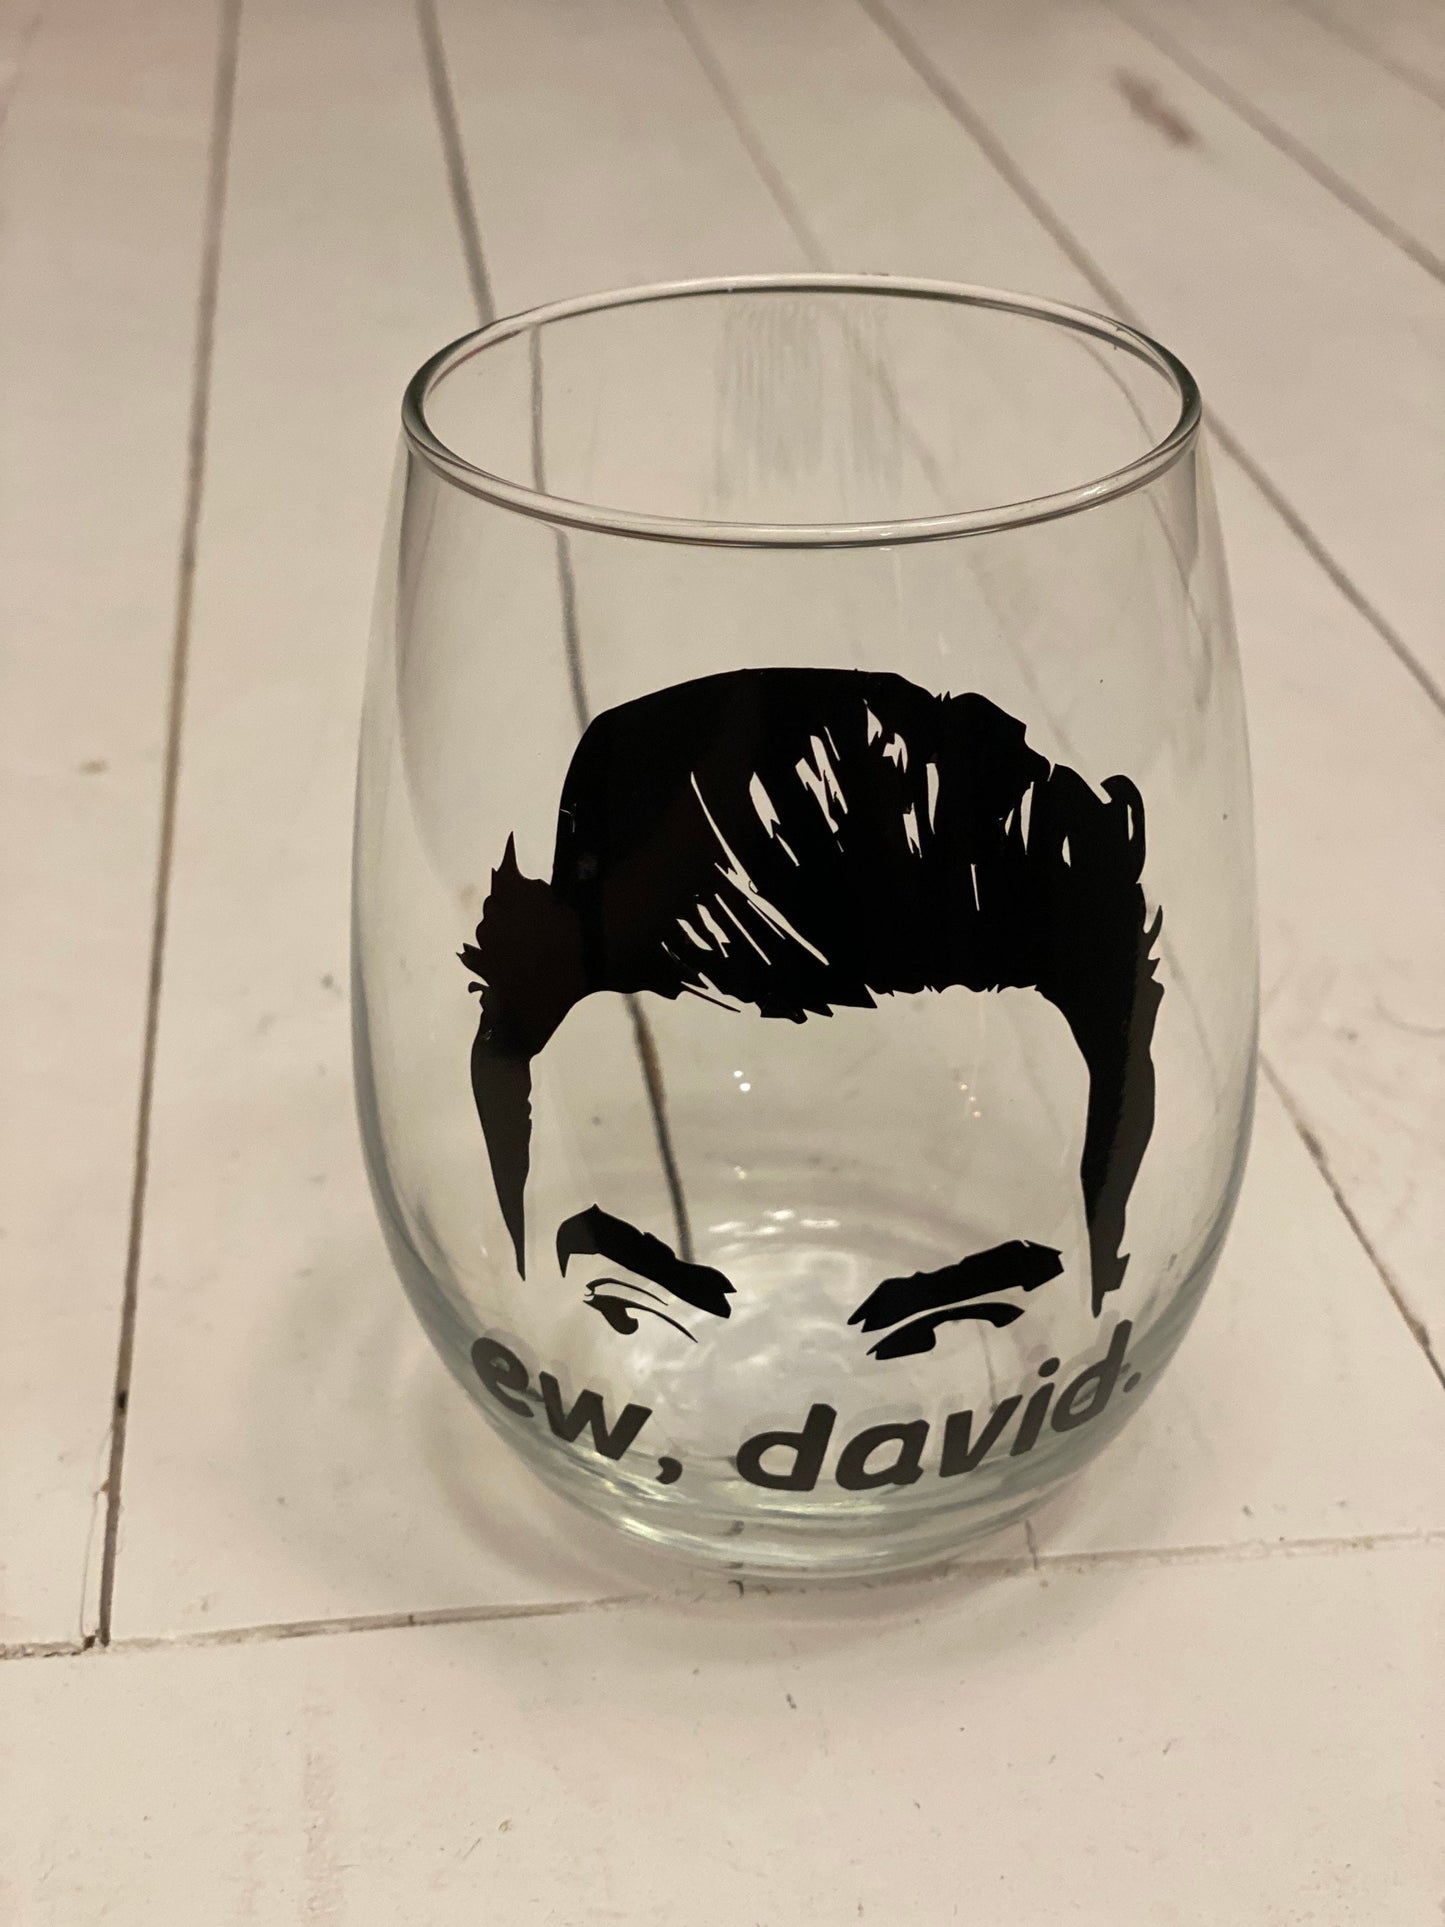 Ew David, 20.5 oz Stemless Wine Glass